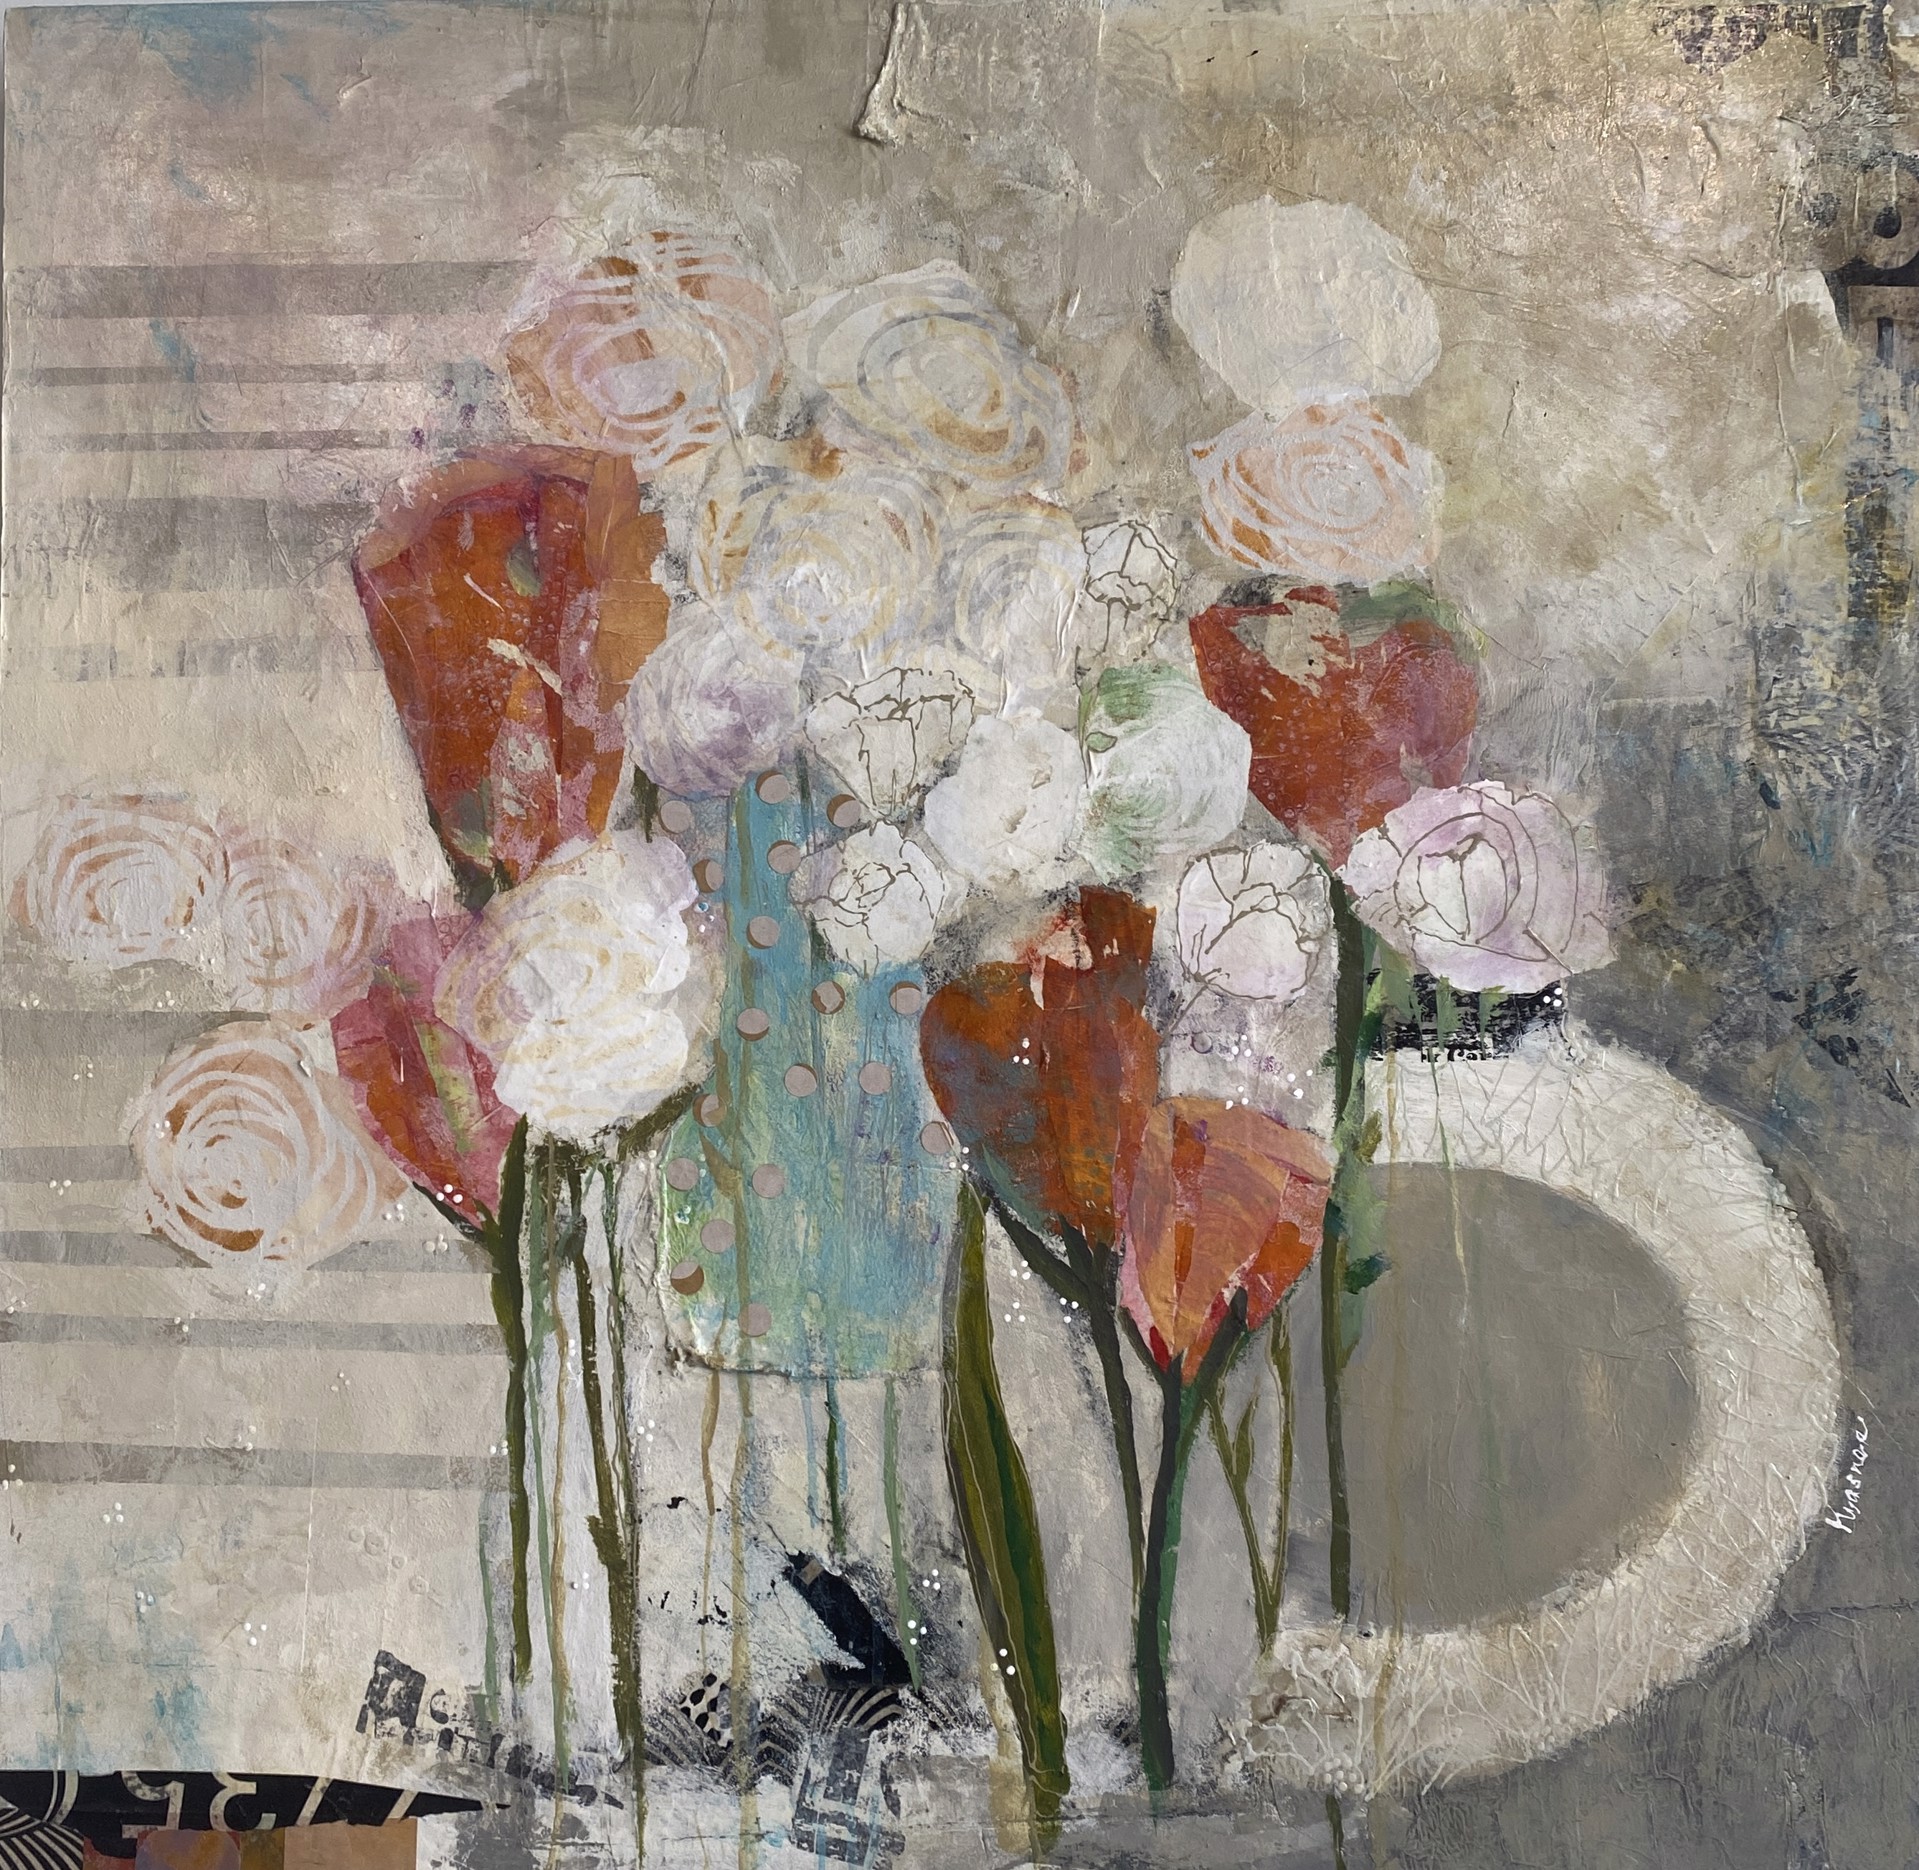 Roses & Tulips by Jill Krasner